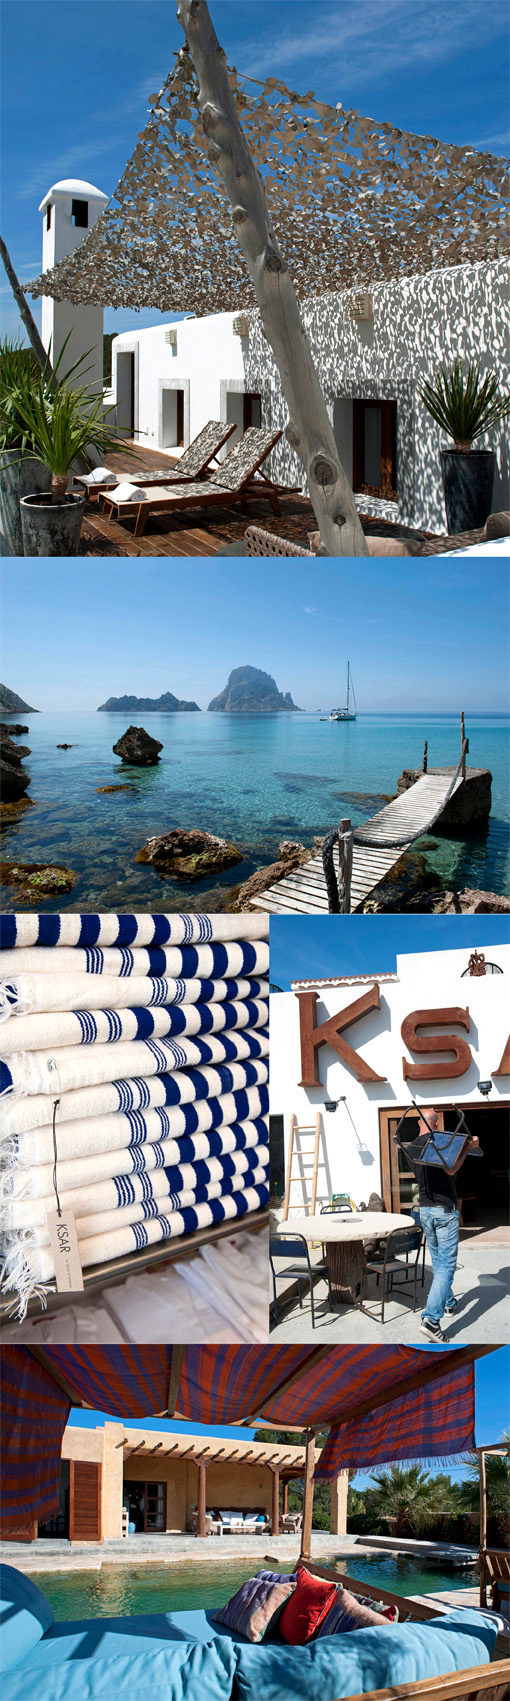 Vakantie Ibiza, reizen Ibiza, vakantie boeken, eiland, Ksar Living, Harissa stijl, huis huren Ibiza